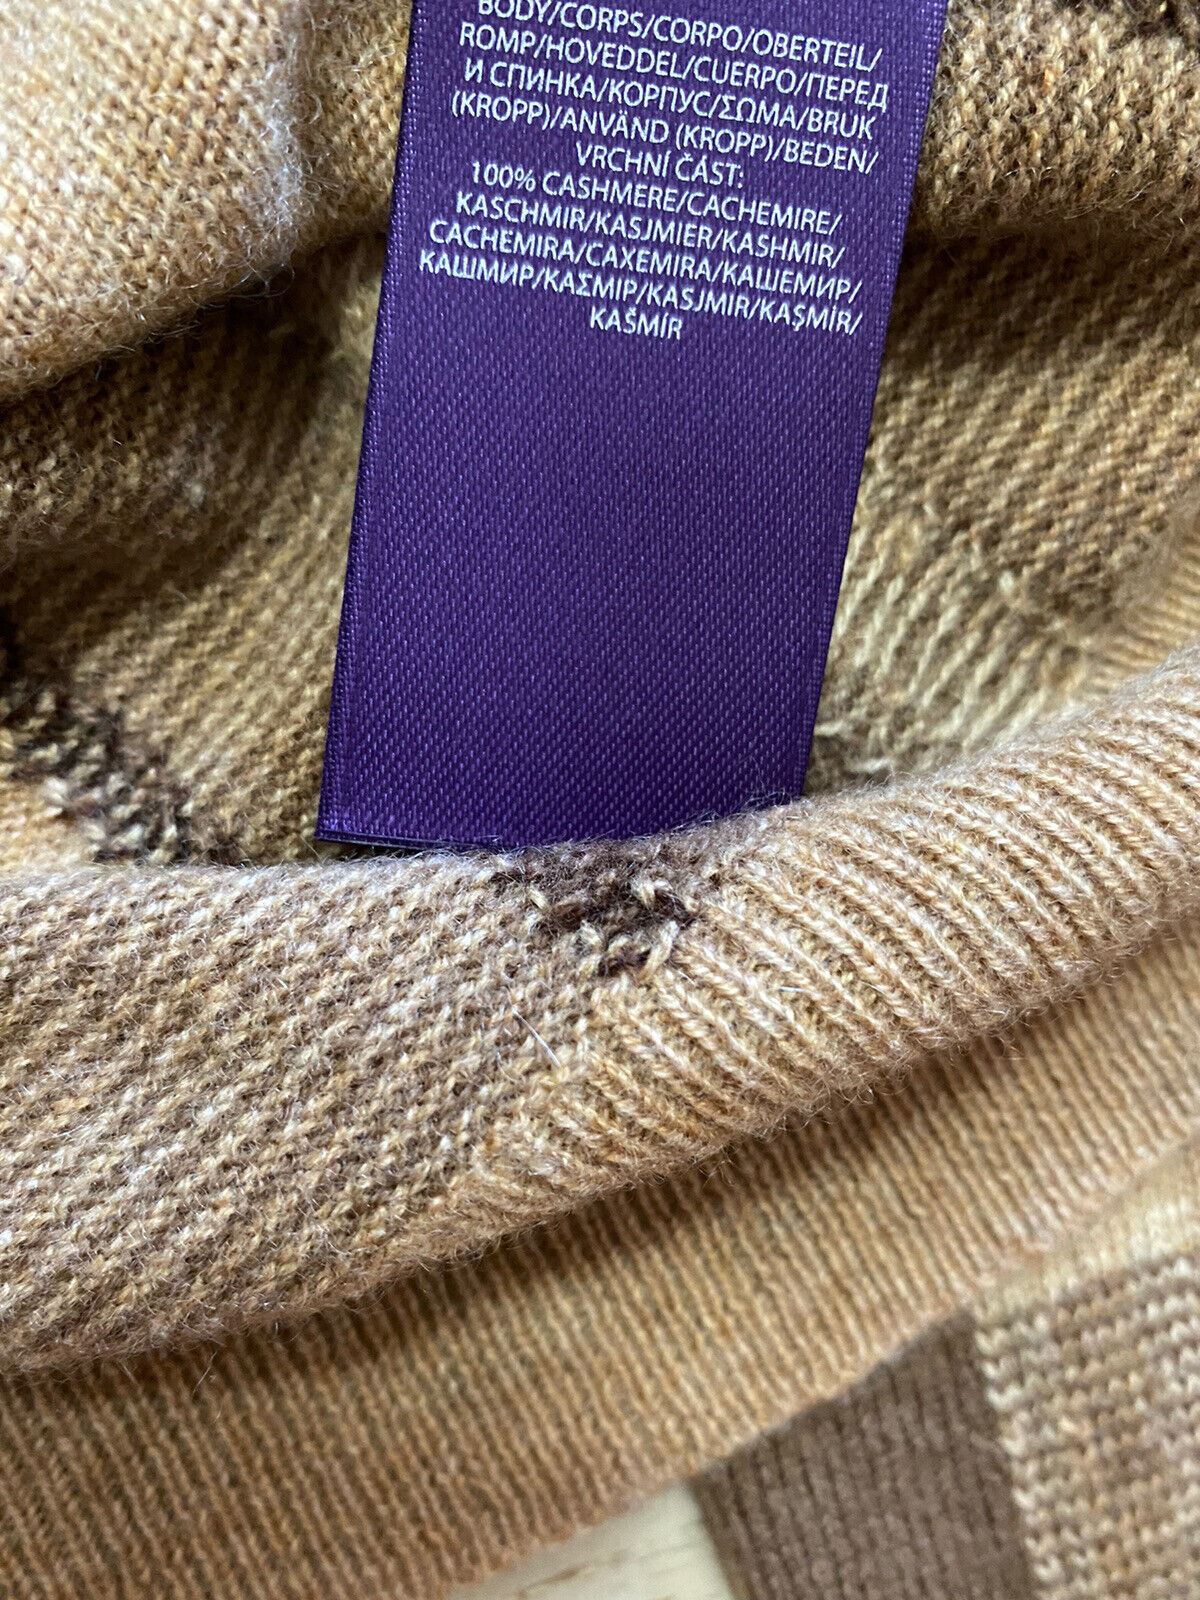 NWT $1495 Ralph Lauren Purple Label Men Crewneck Cashmere Sweater Color Camel XL